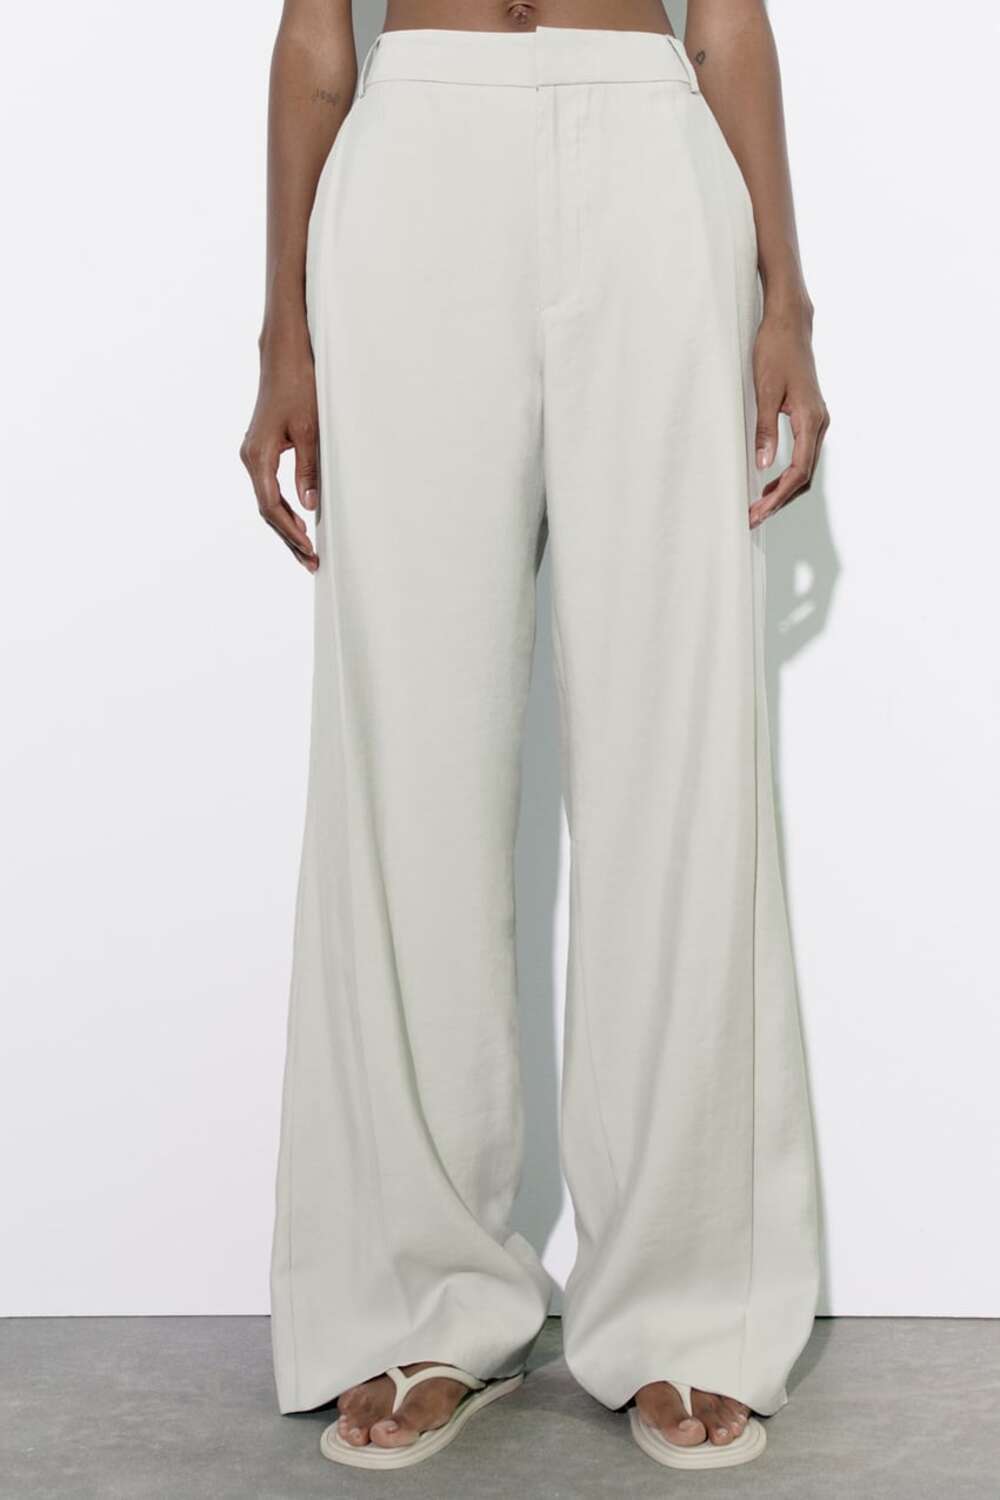 Led sive pantalone Trend tihog luksuza sve više raste, a Zara ima idealne komade za to